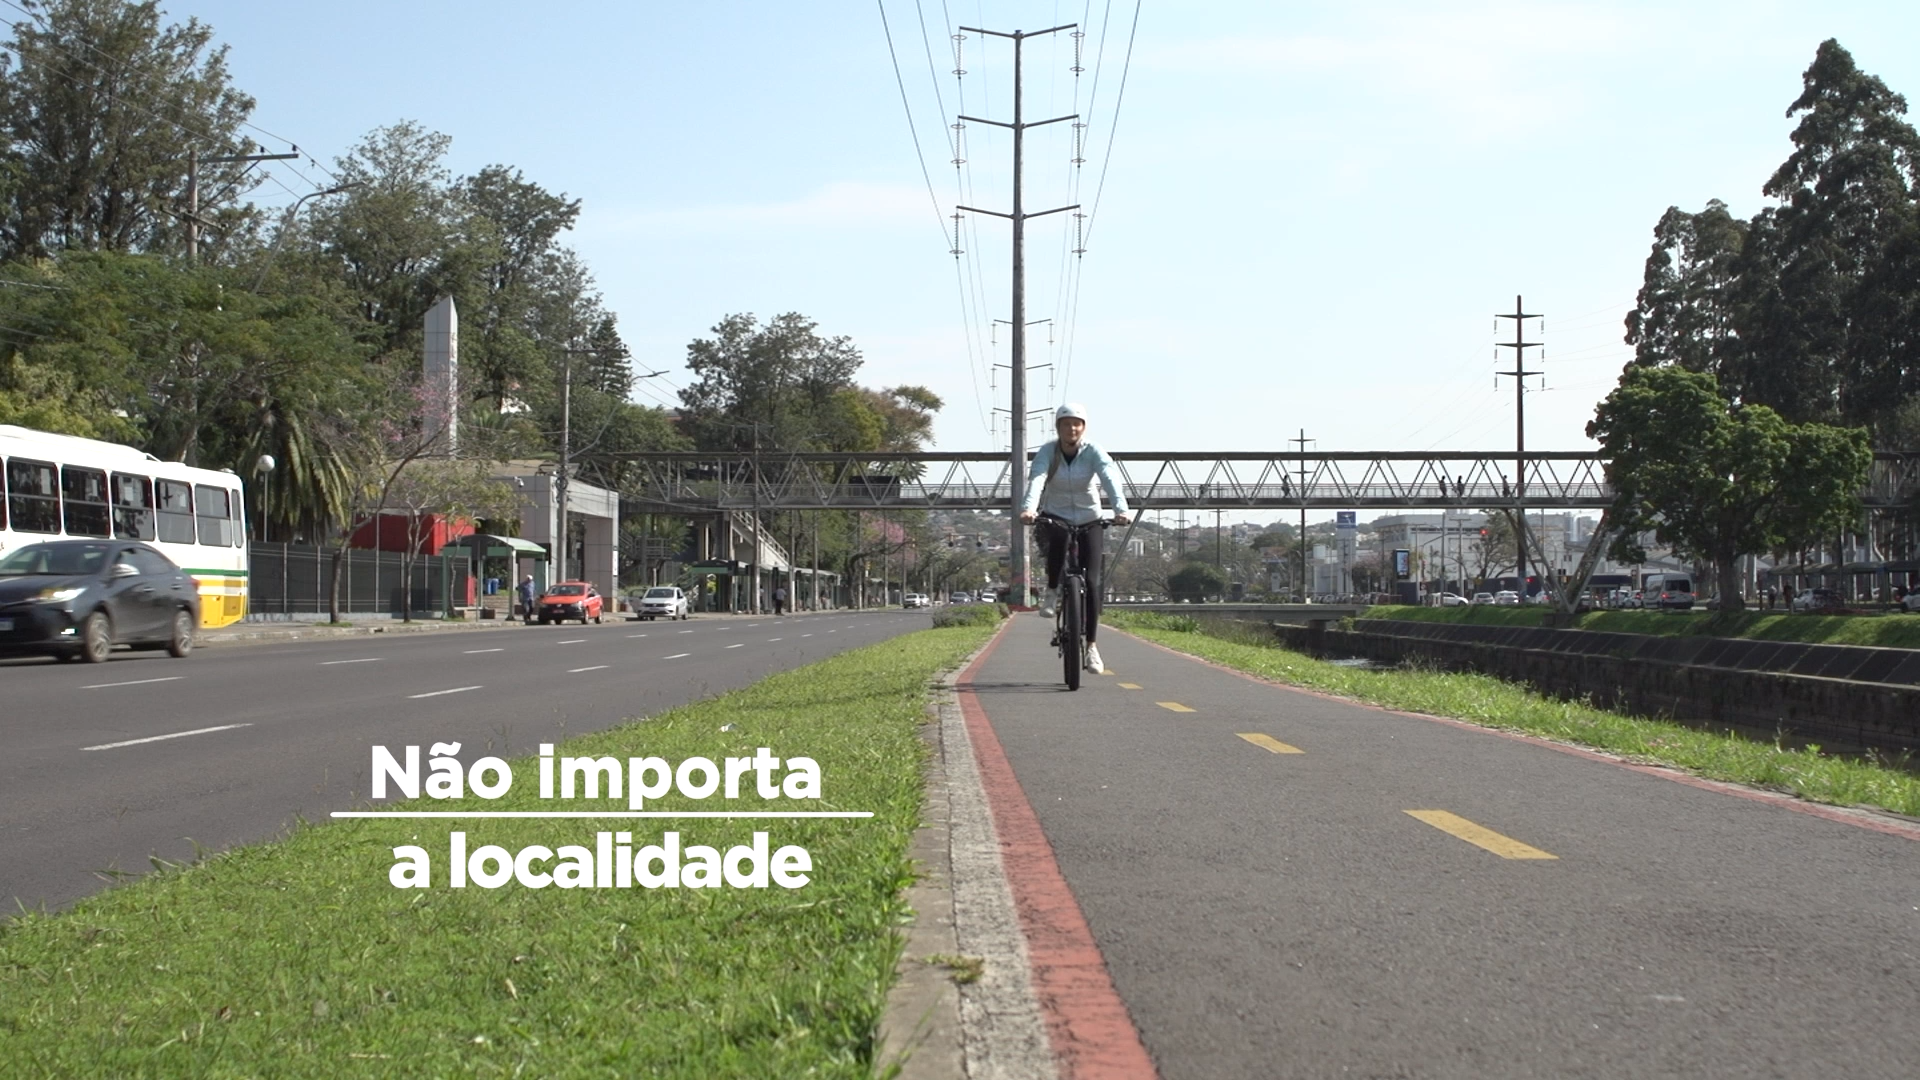 Frame da campanha, onde está escrito "não importa a localidade", aparecendo uma jovem andando de bicicleta